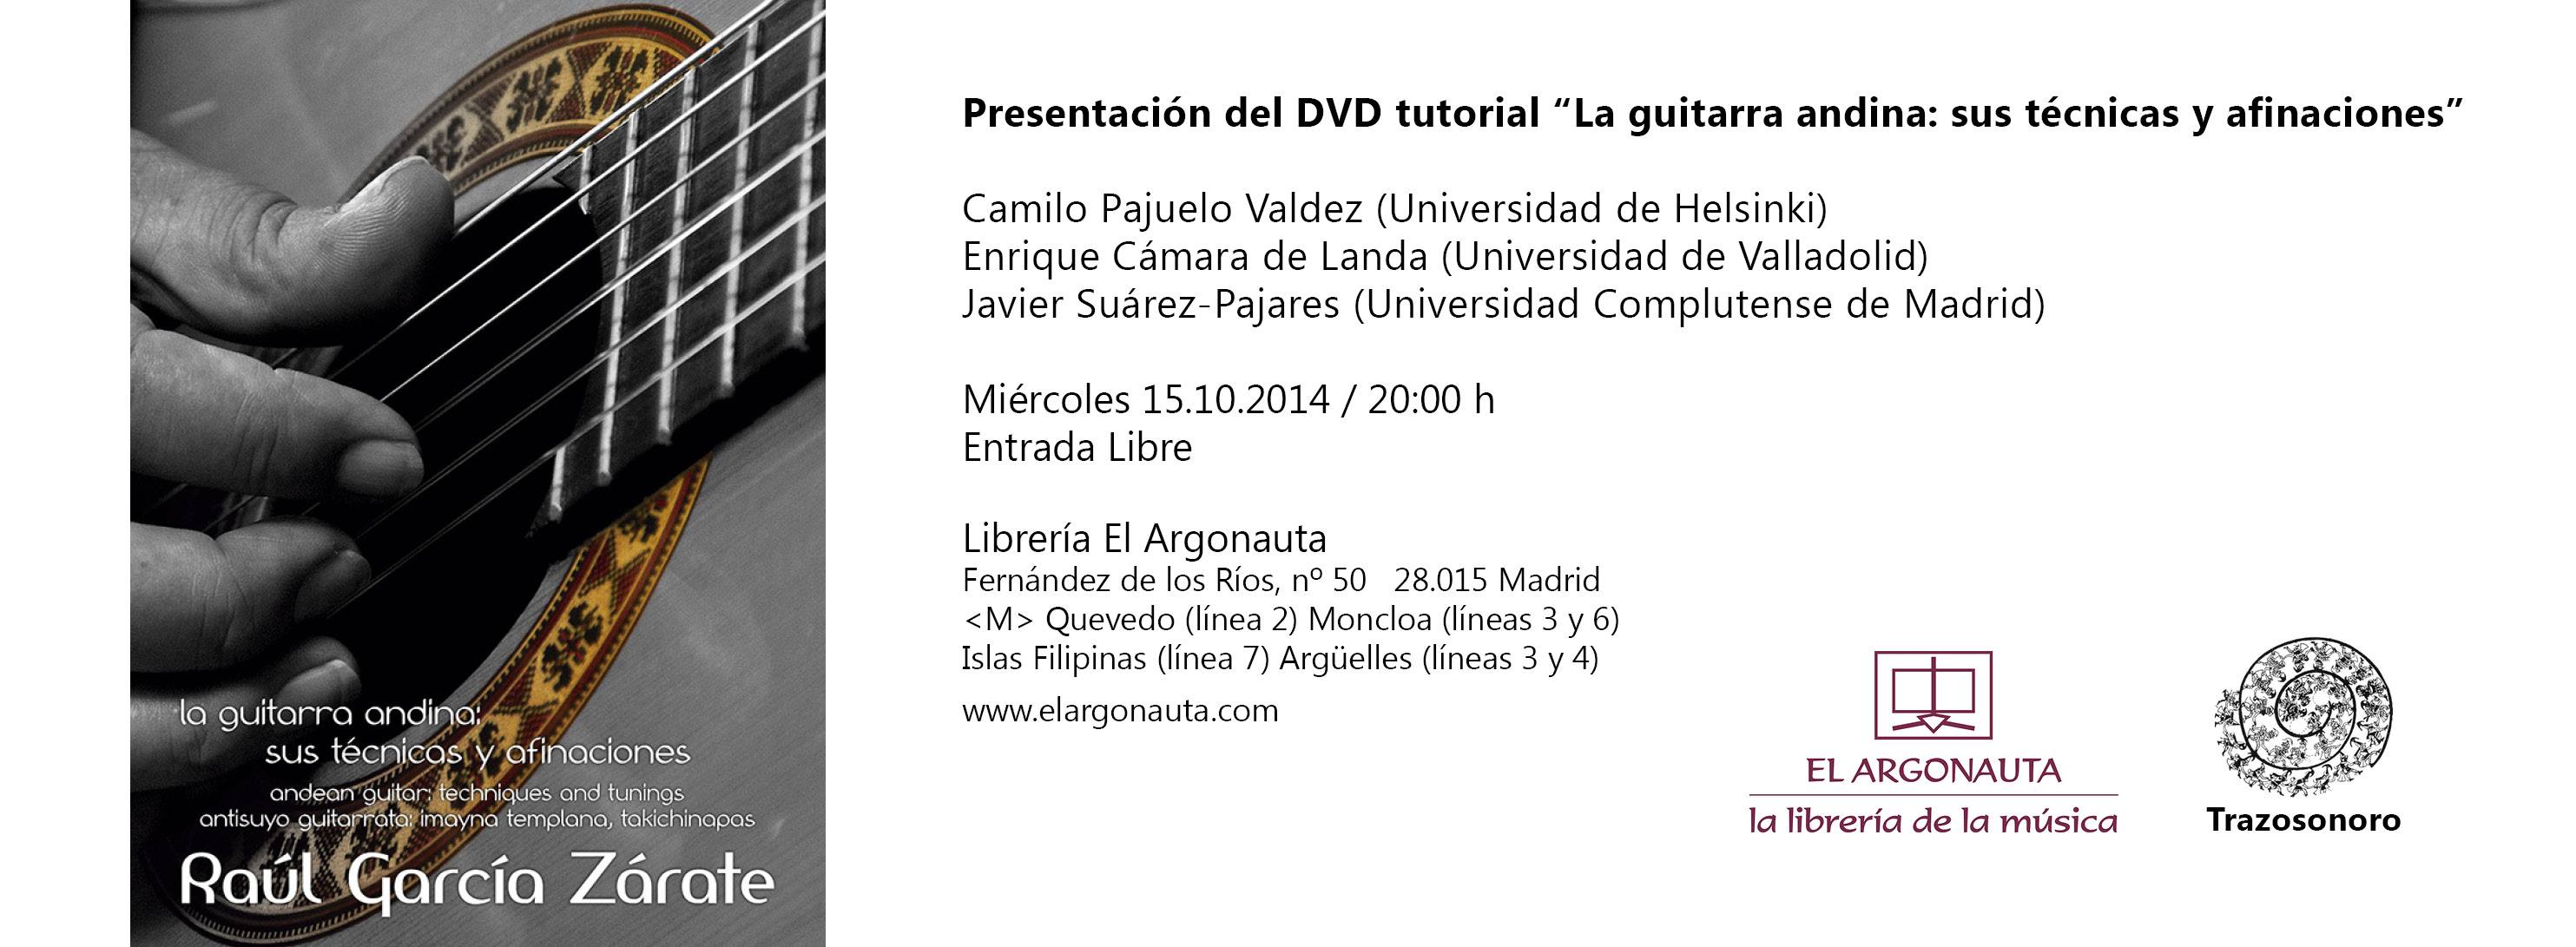 Presentación del DVD "La guitarra andina"